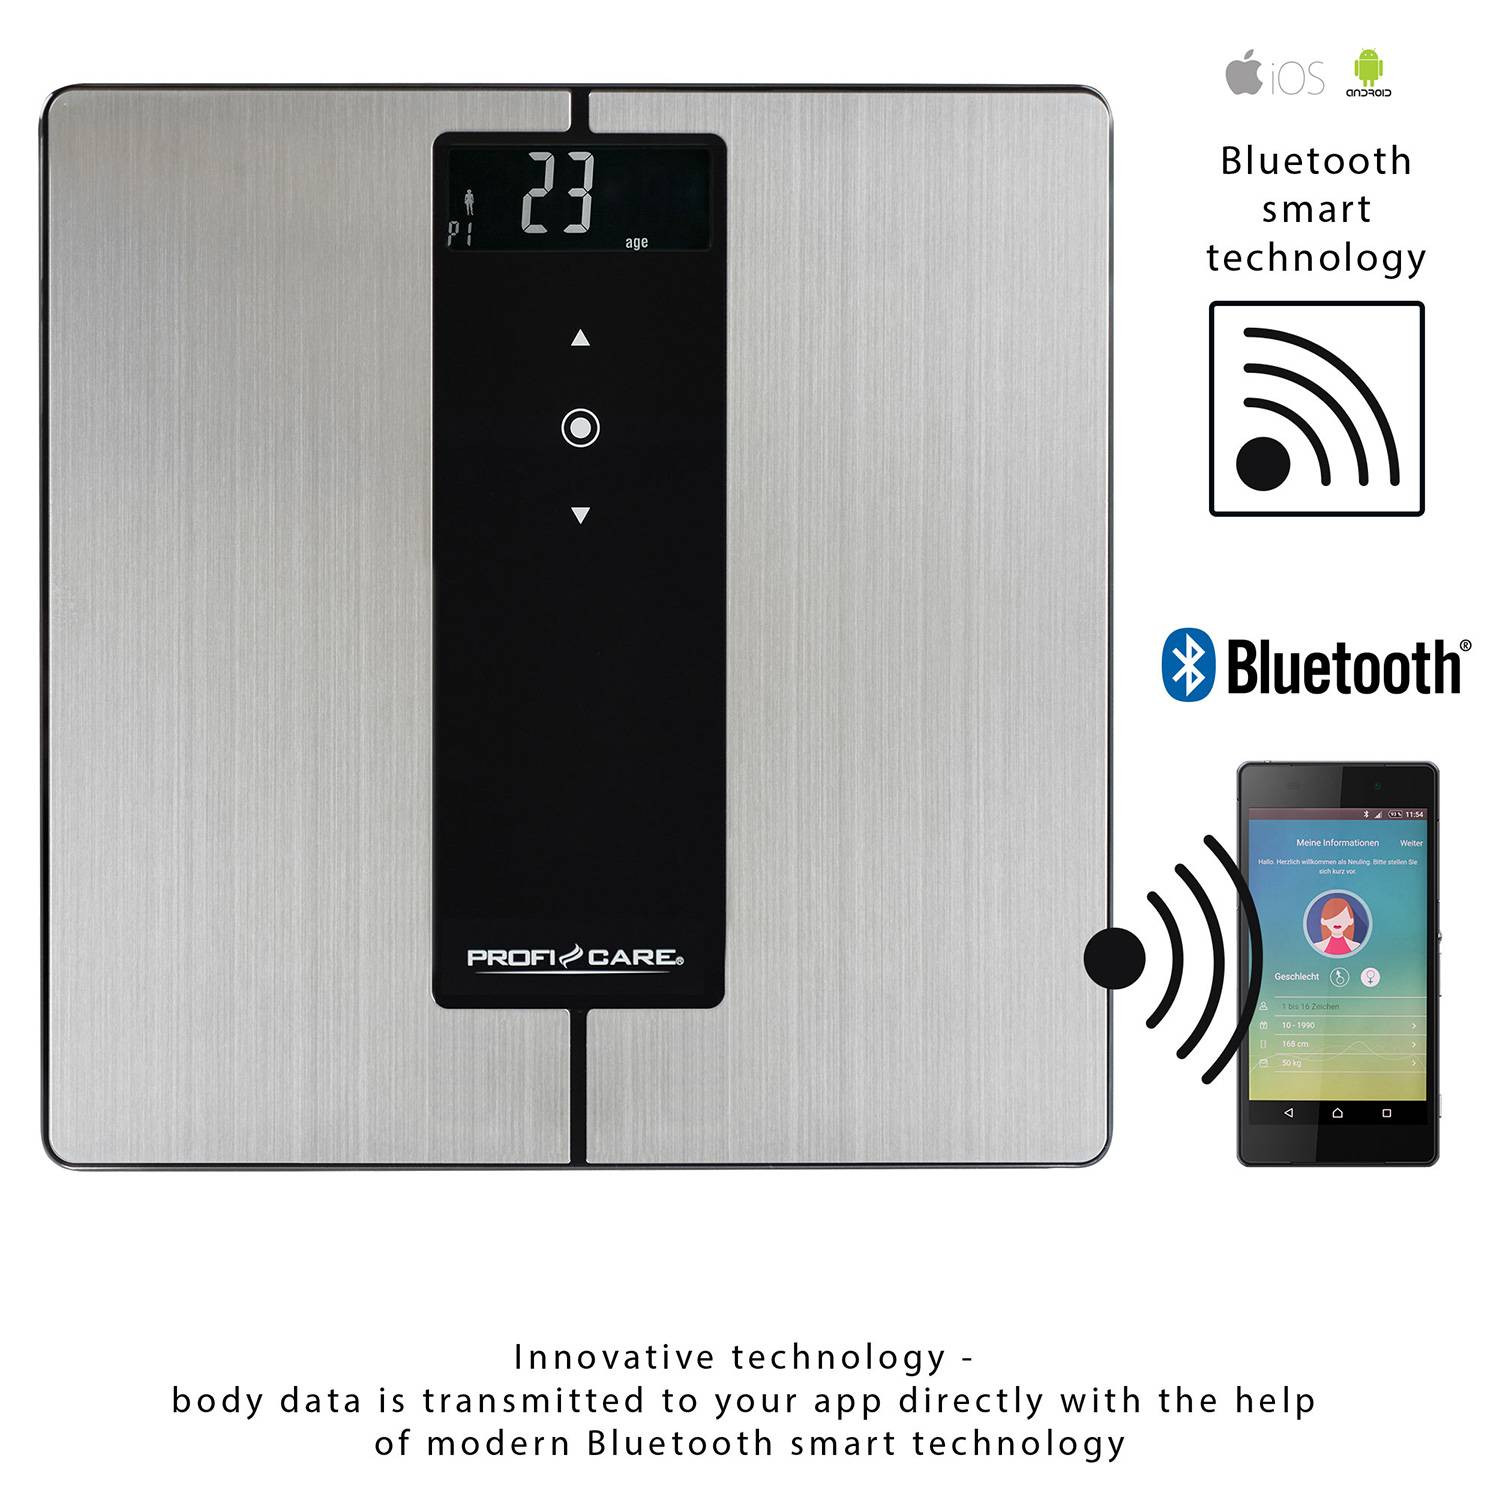 Báscula inteligente Bluetooth. App con análisis corporal